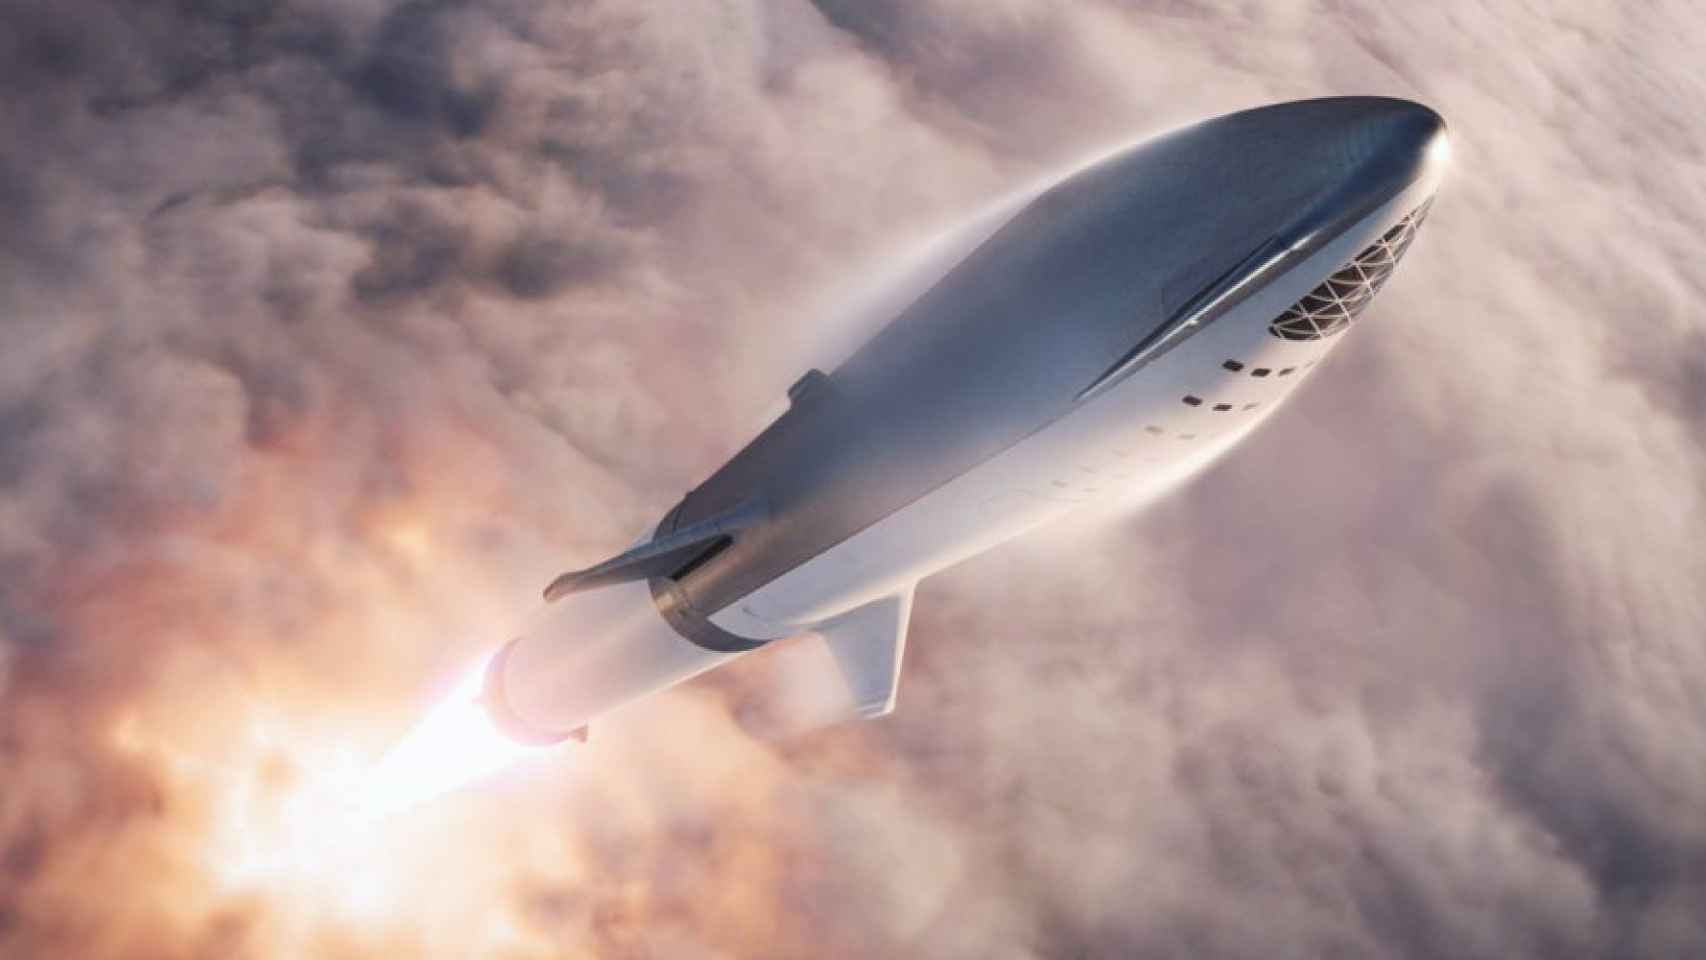 Starship de SpaceX con la que Elon Musk quiere realizar vuelos hipersónicos en la Tierra